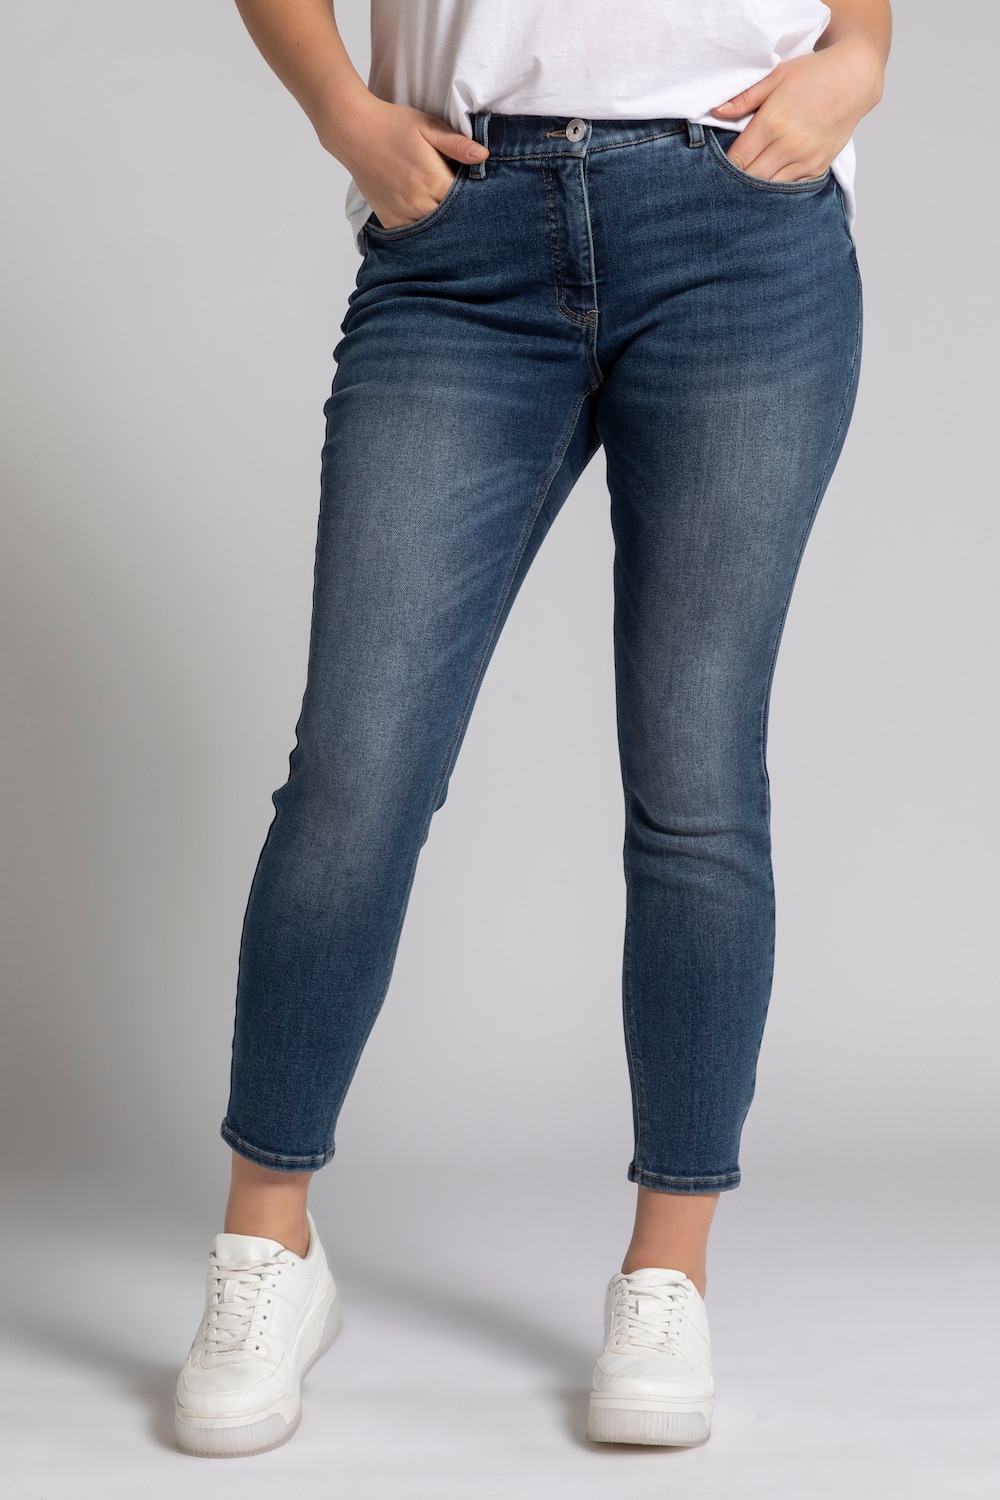 Grote Maten skinny jeans, Dames, blauw, Maat: 56, Katoen, Studio Untold